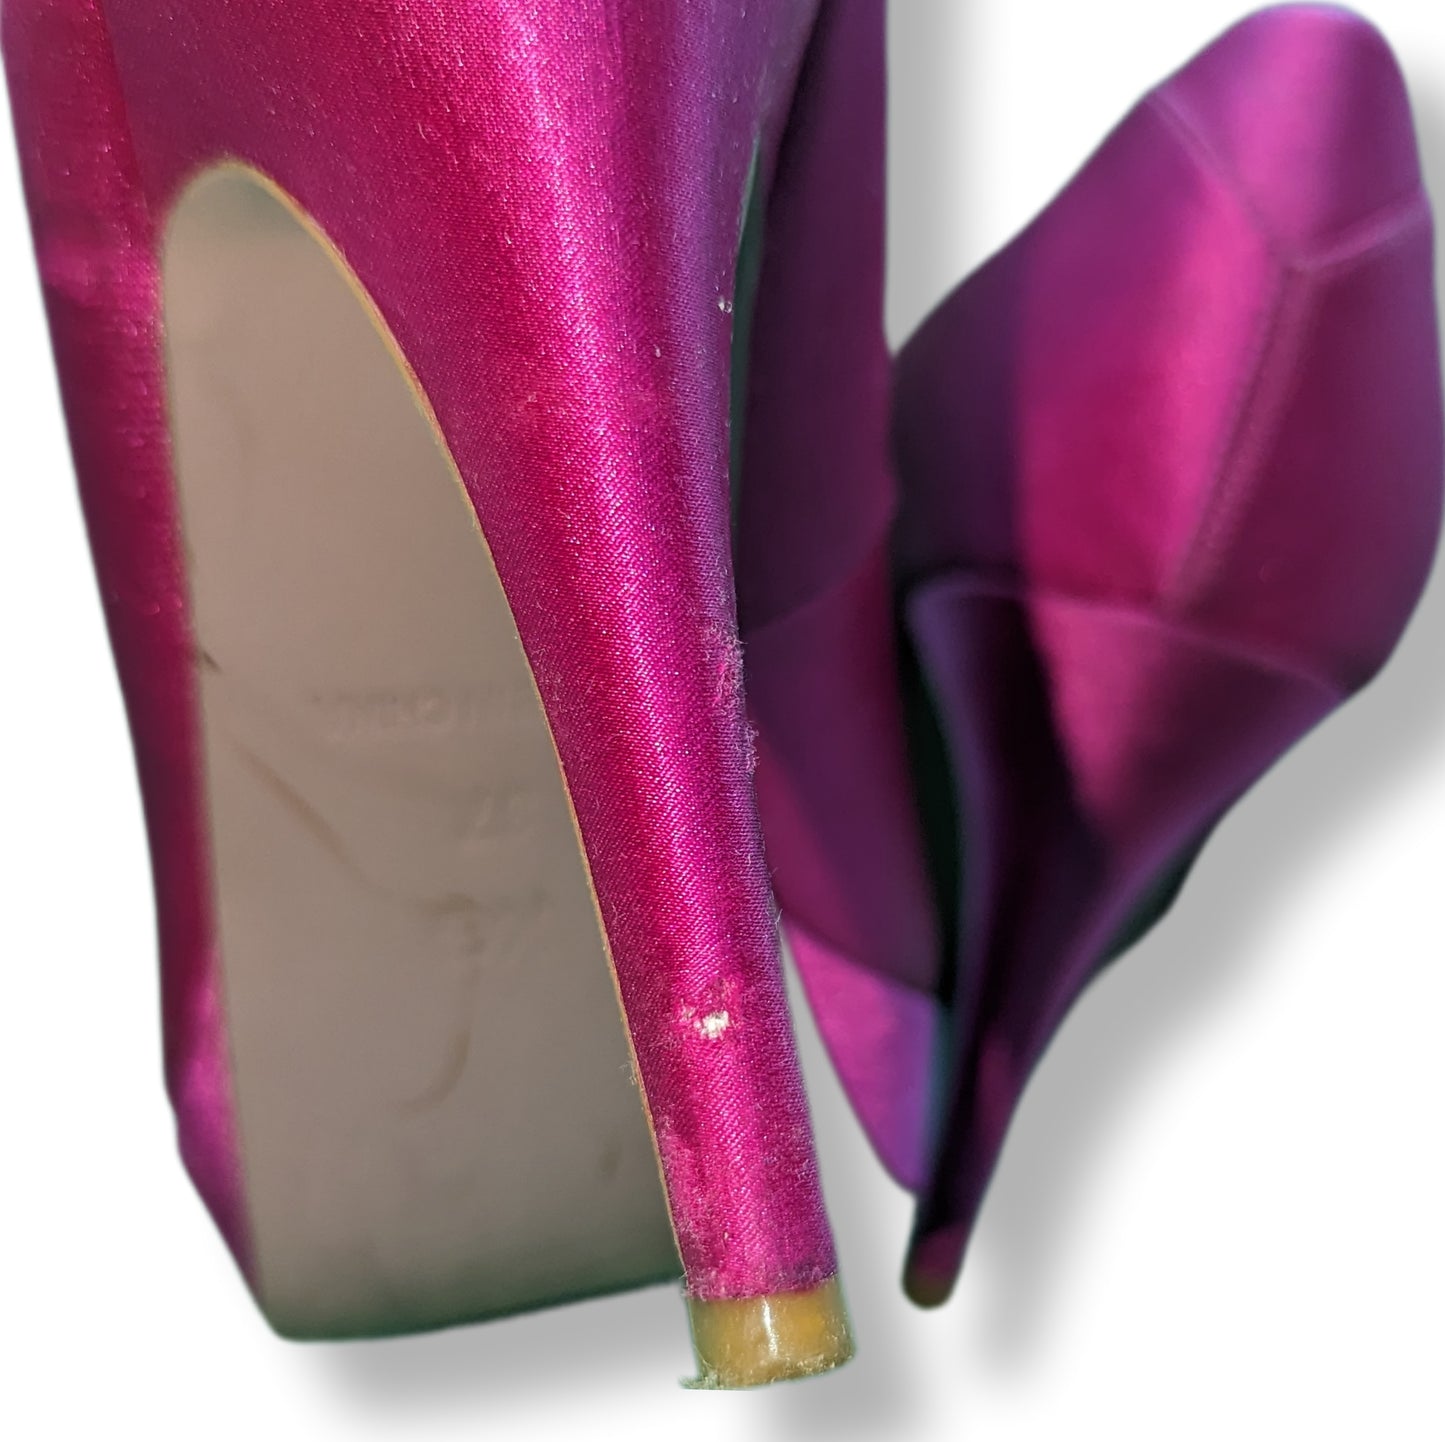 KG Kurt Geiger Pink Peep Toe High Heels Women Size UK 4